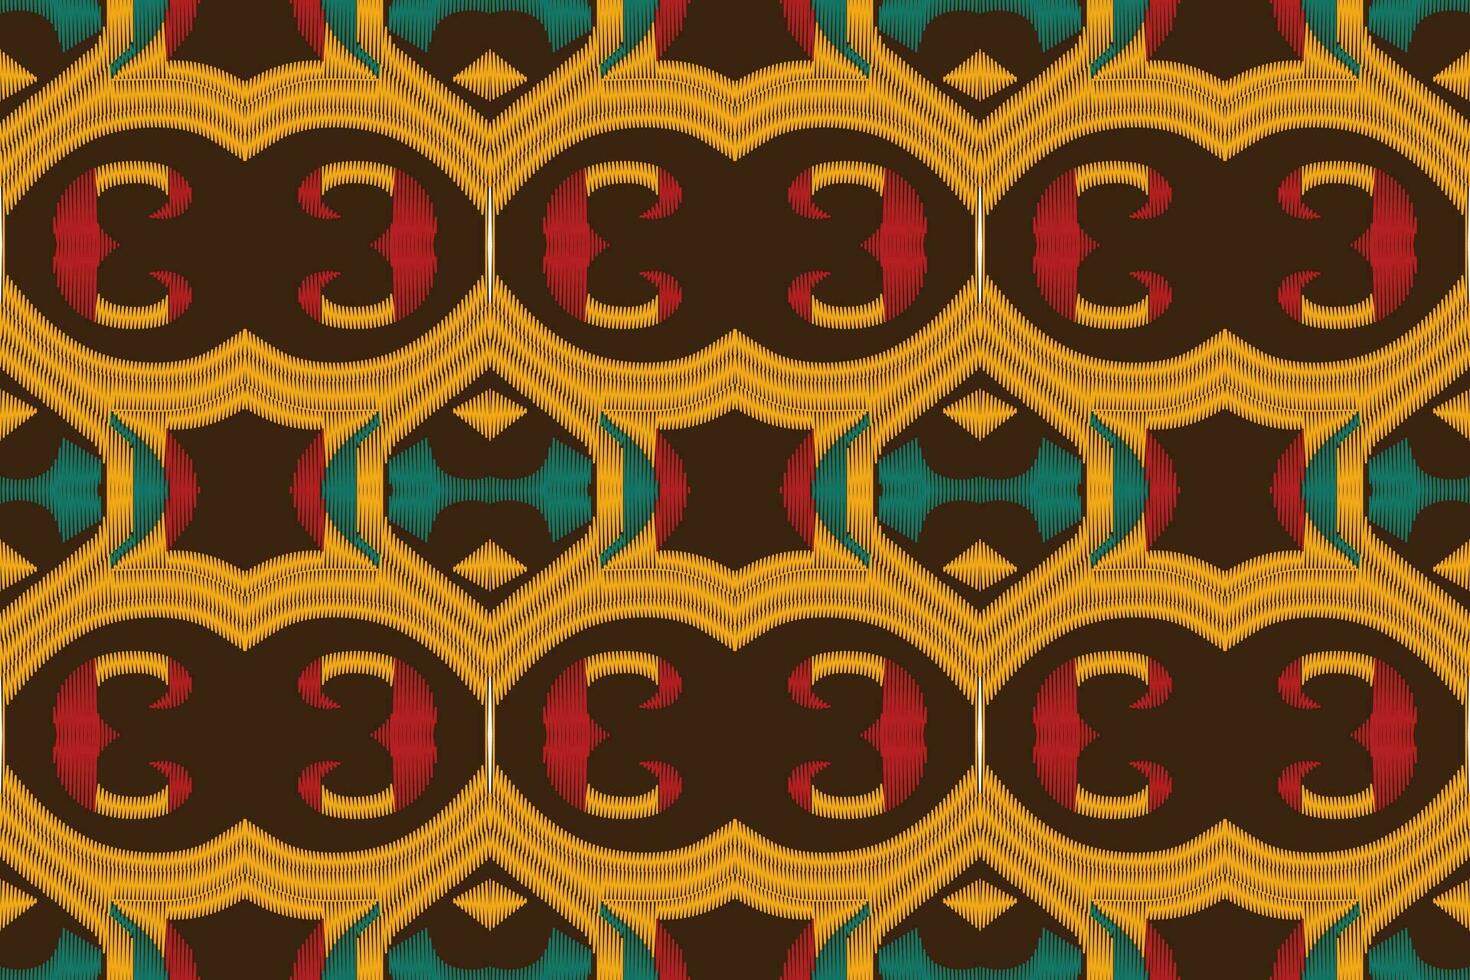 ikat floral paisley broderie Contexte. ikat Triangle géométrique ethnique Oriental modèle traditionnel.aztèque style abstrait vecteur illustration.design pour texture, tissu, vêtements, emballage, paréo.